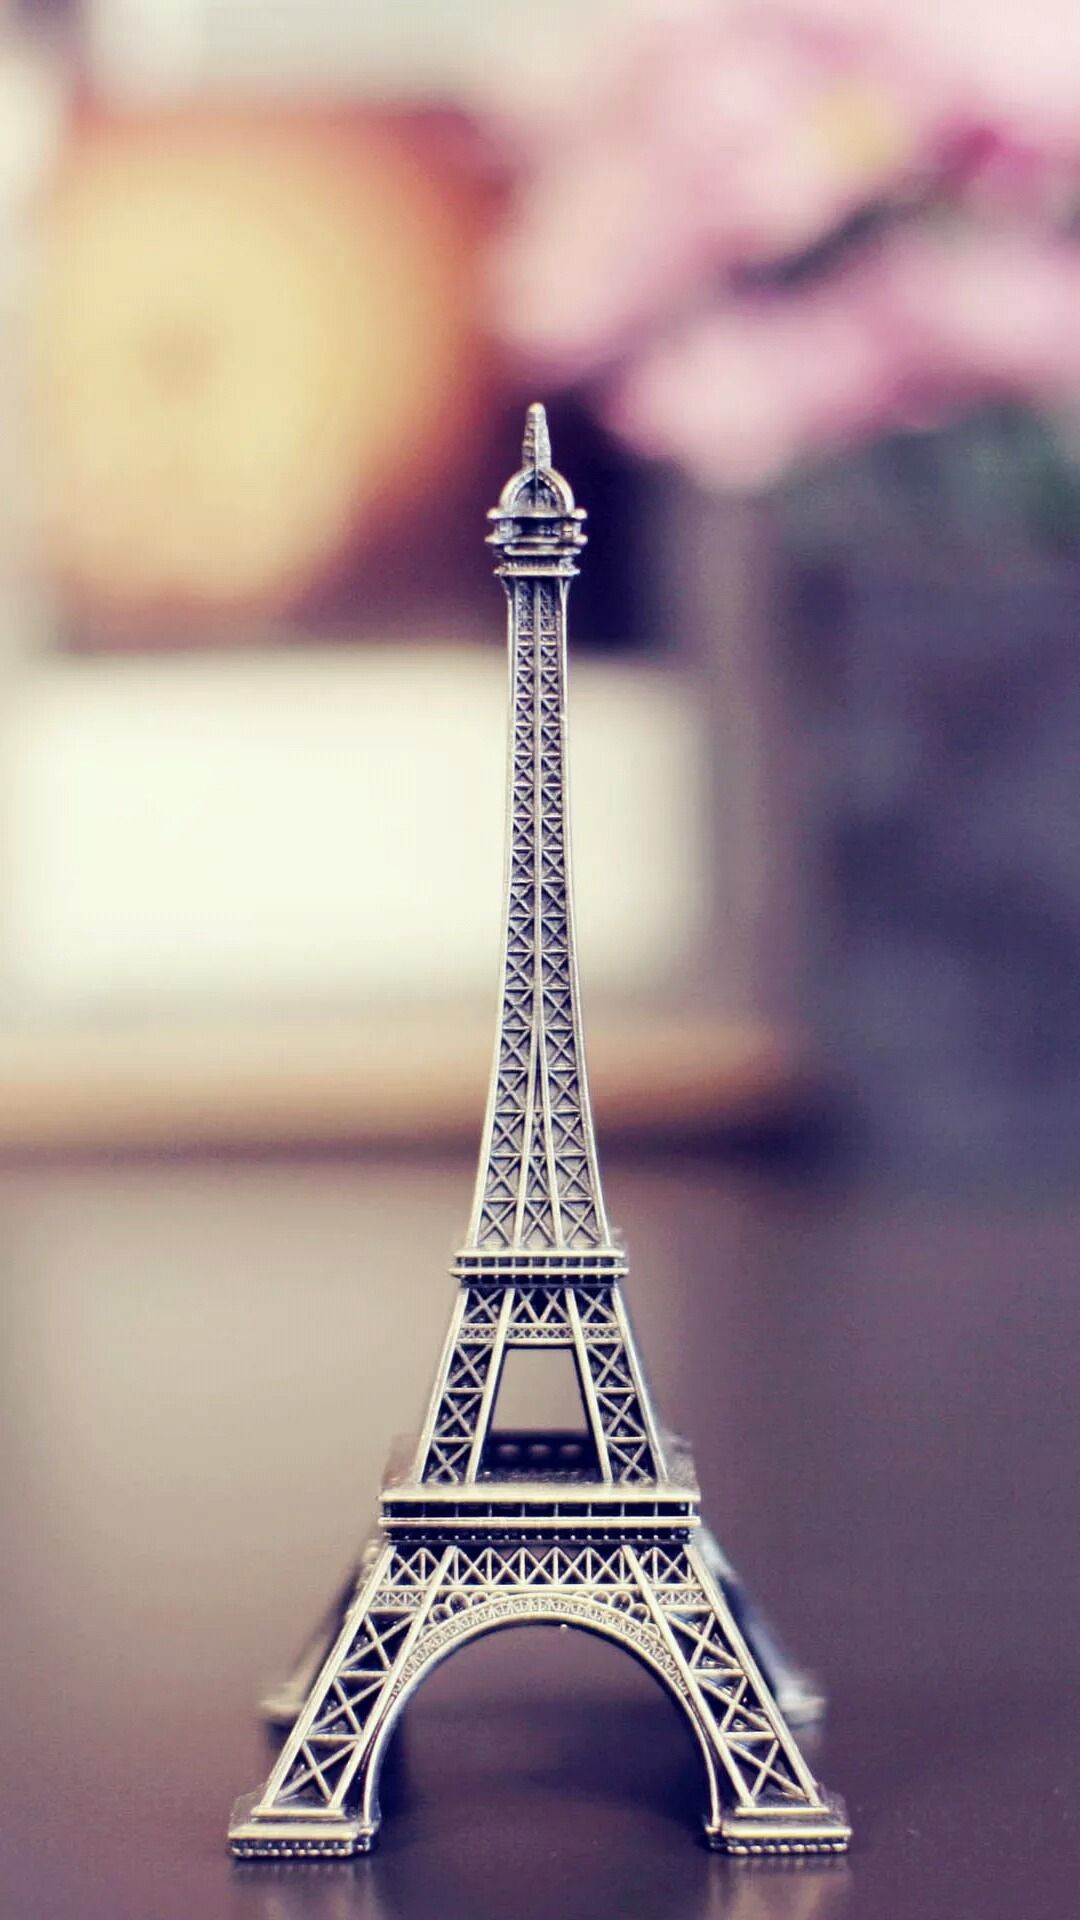 Vintage Eiffel Tower, Paris iPhone wallpaper. Romance City. Tap to